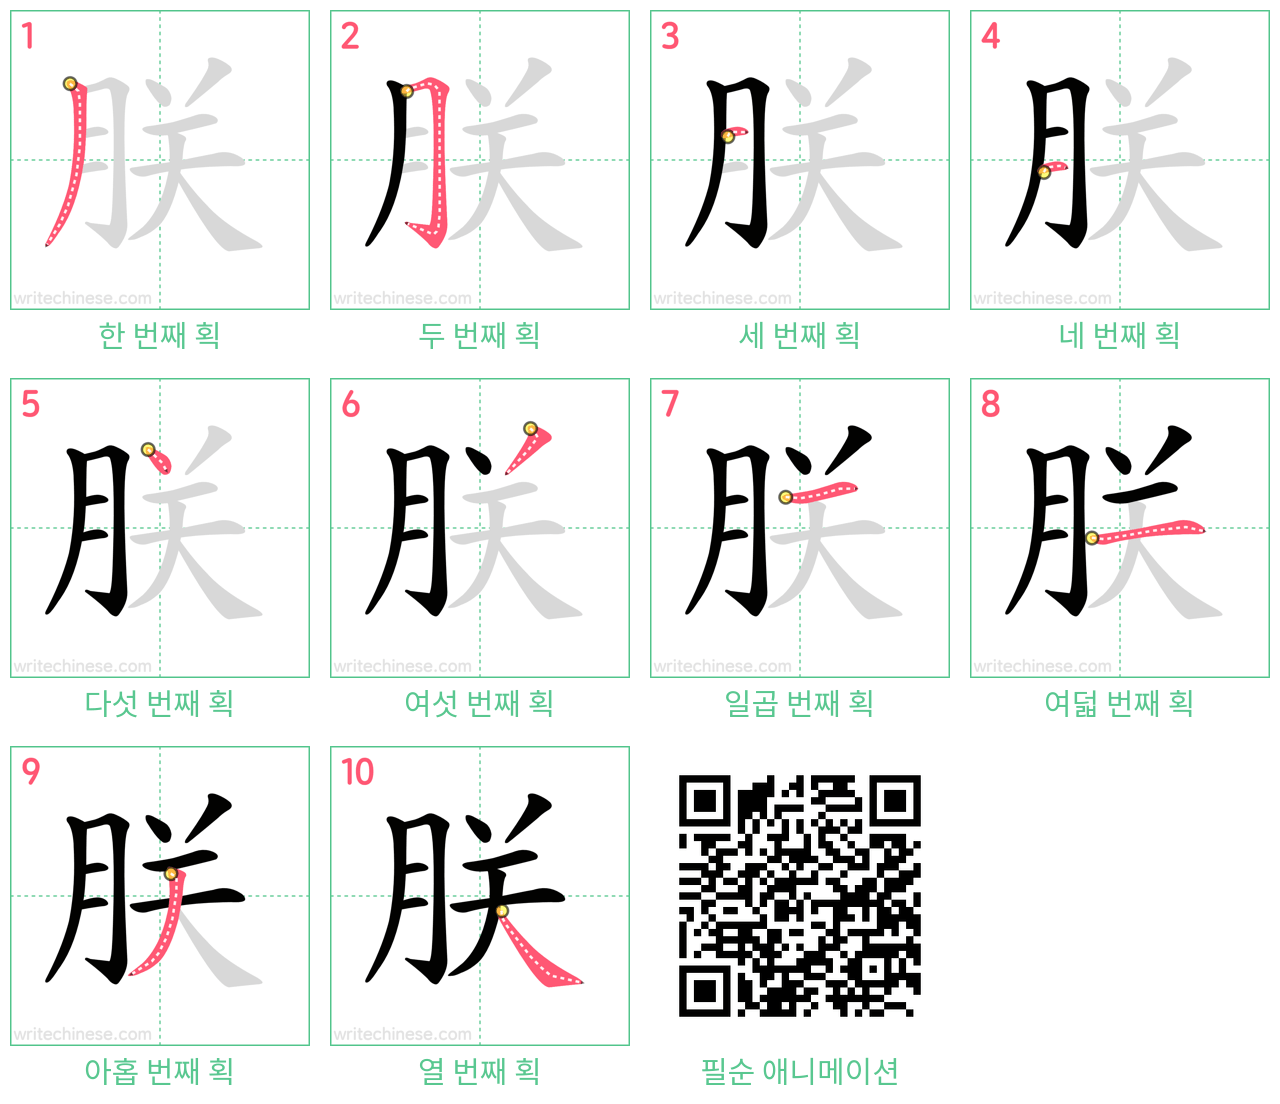 朕 step-by-step stroke order diagrams